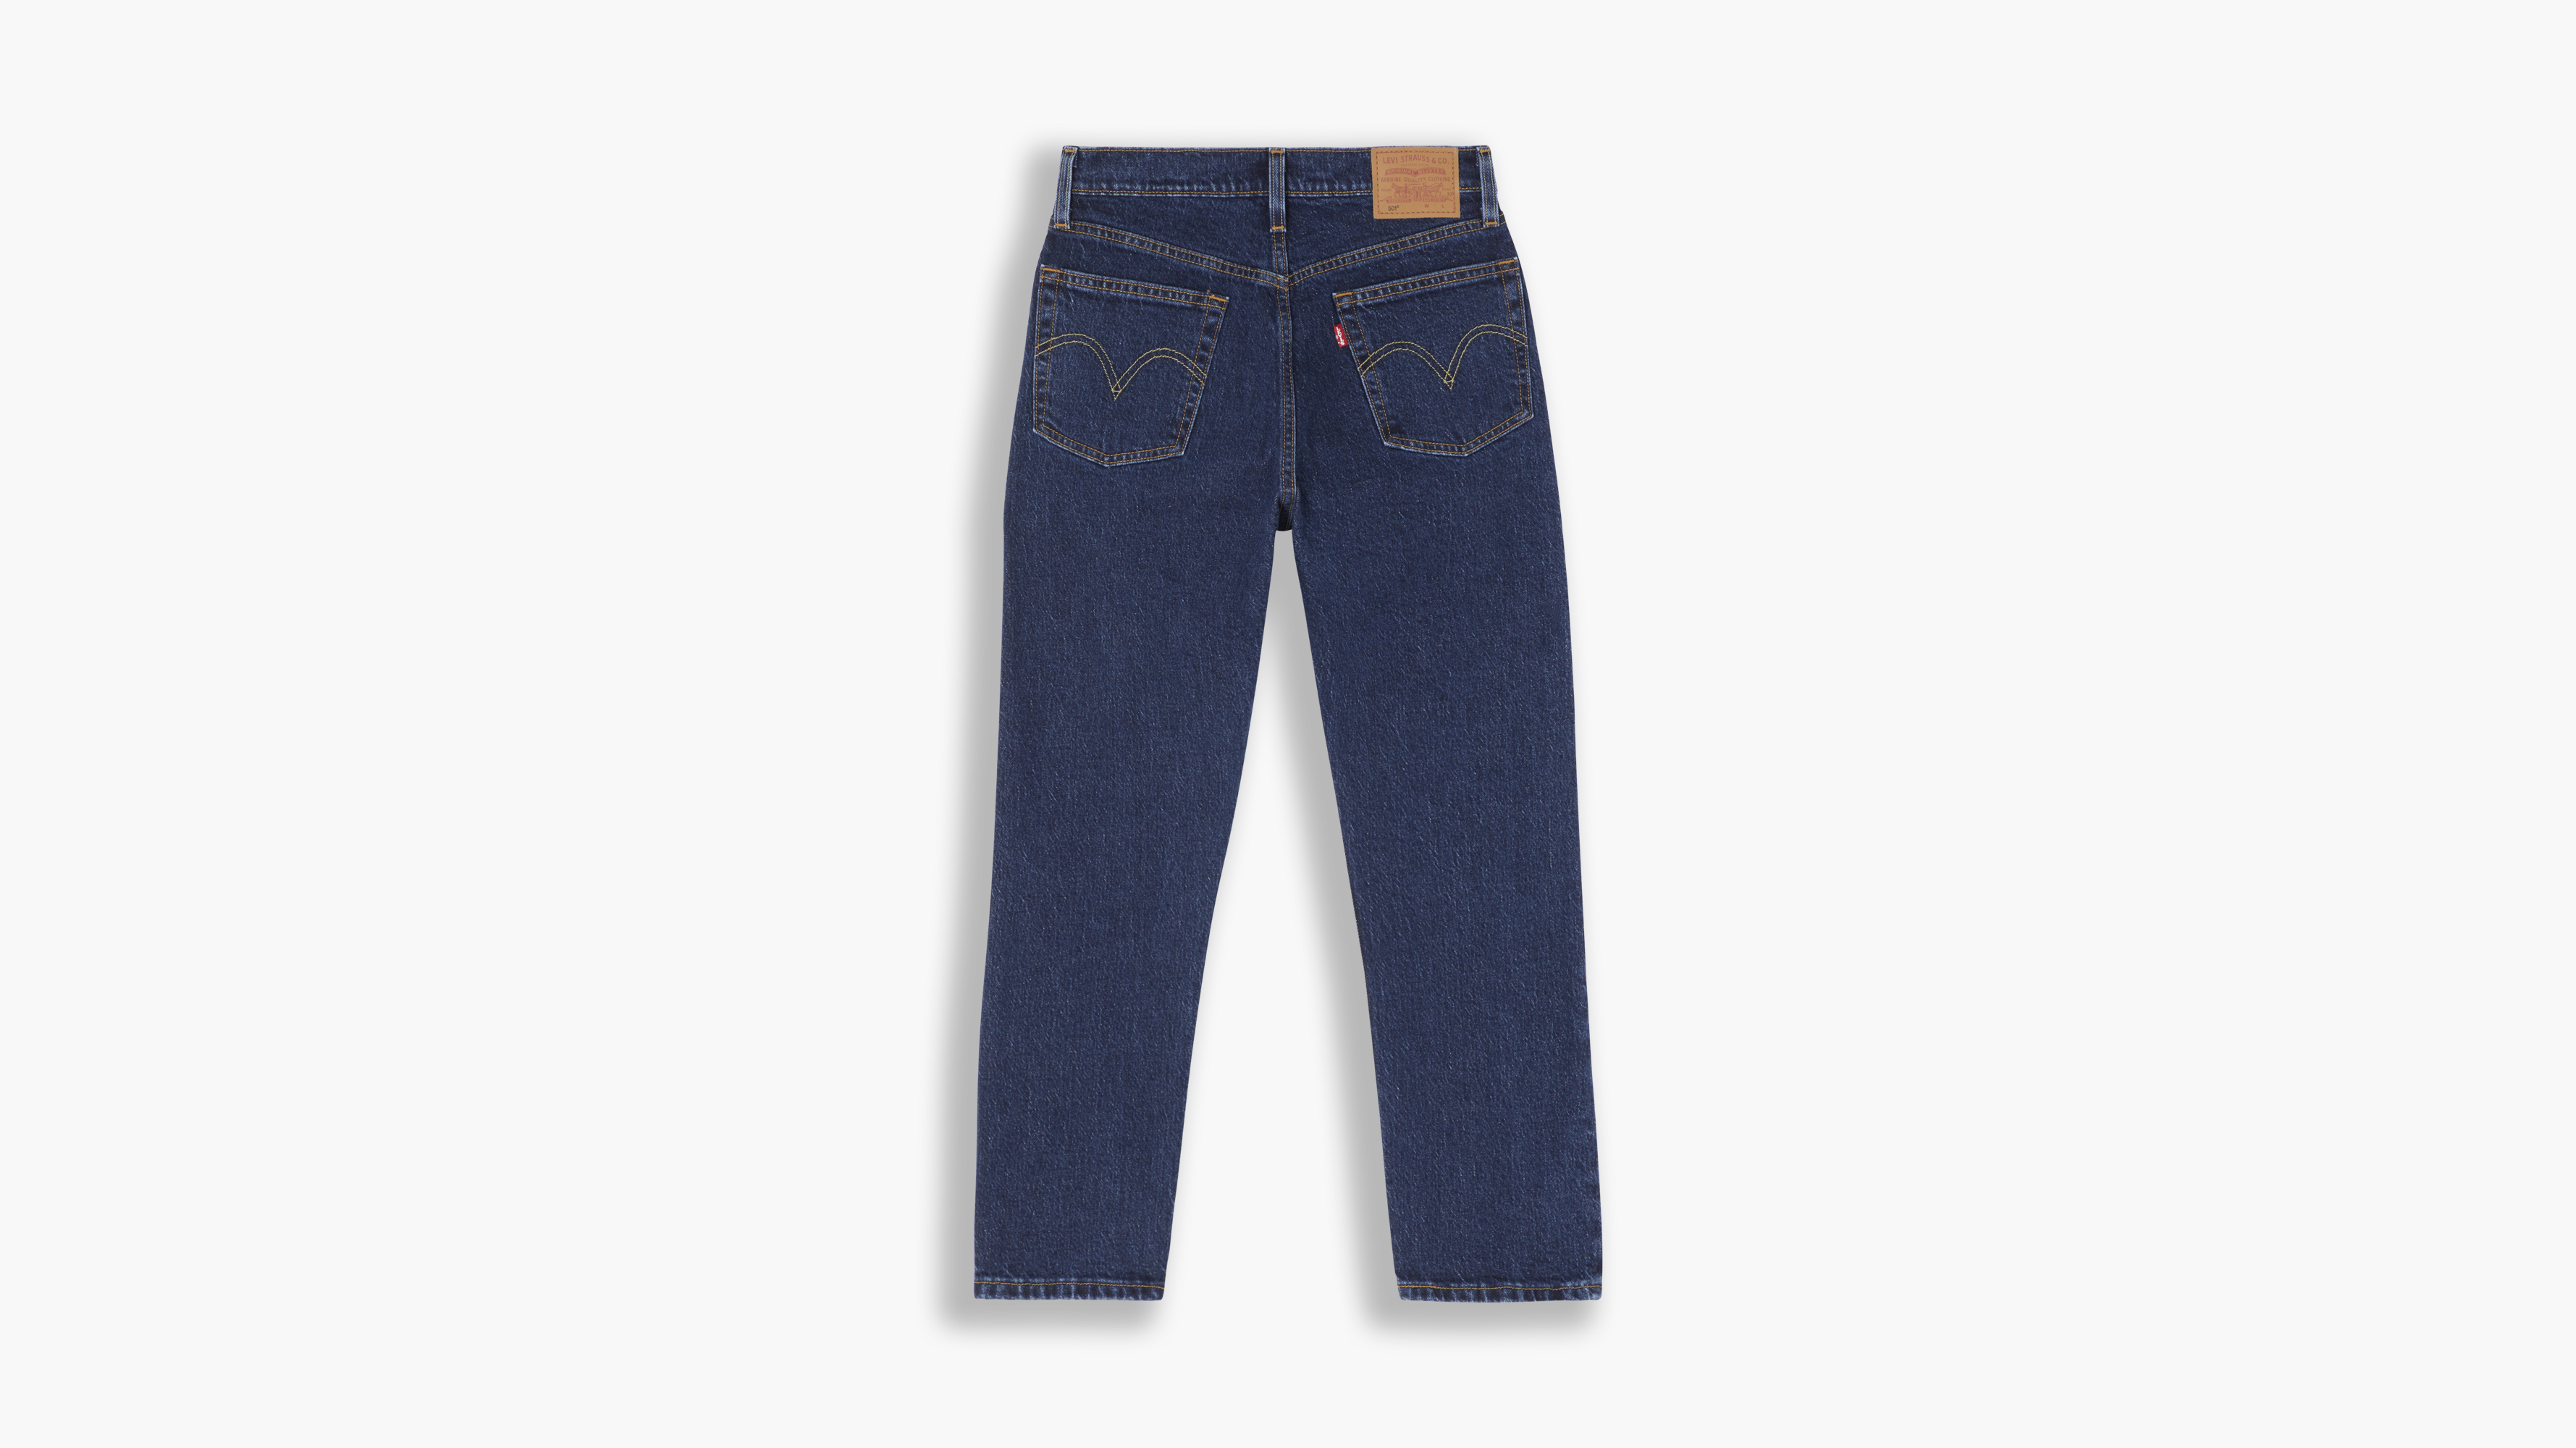  501 Original Crop Jeans, Salsa Stonewash, 26/28